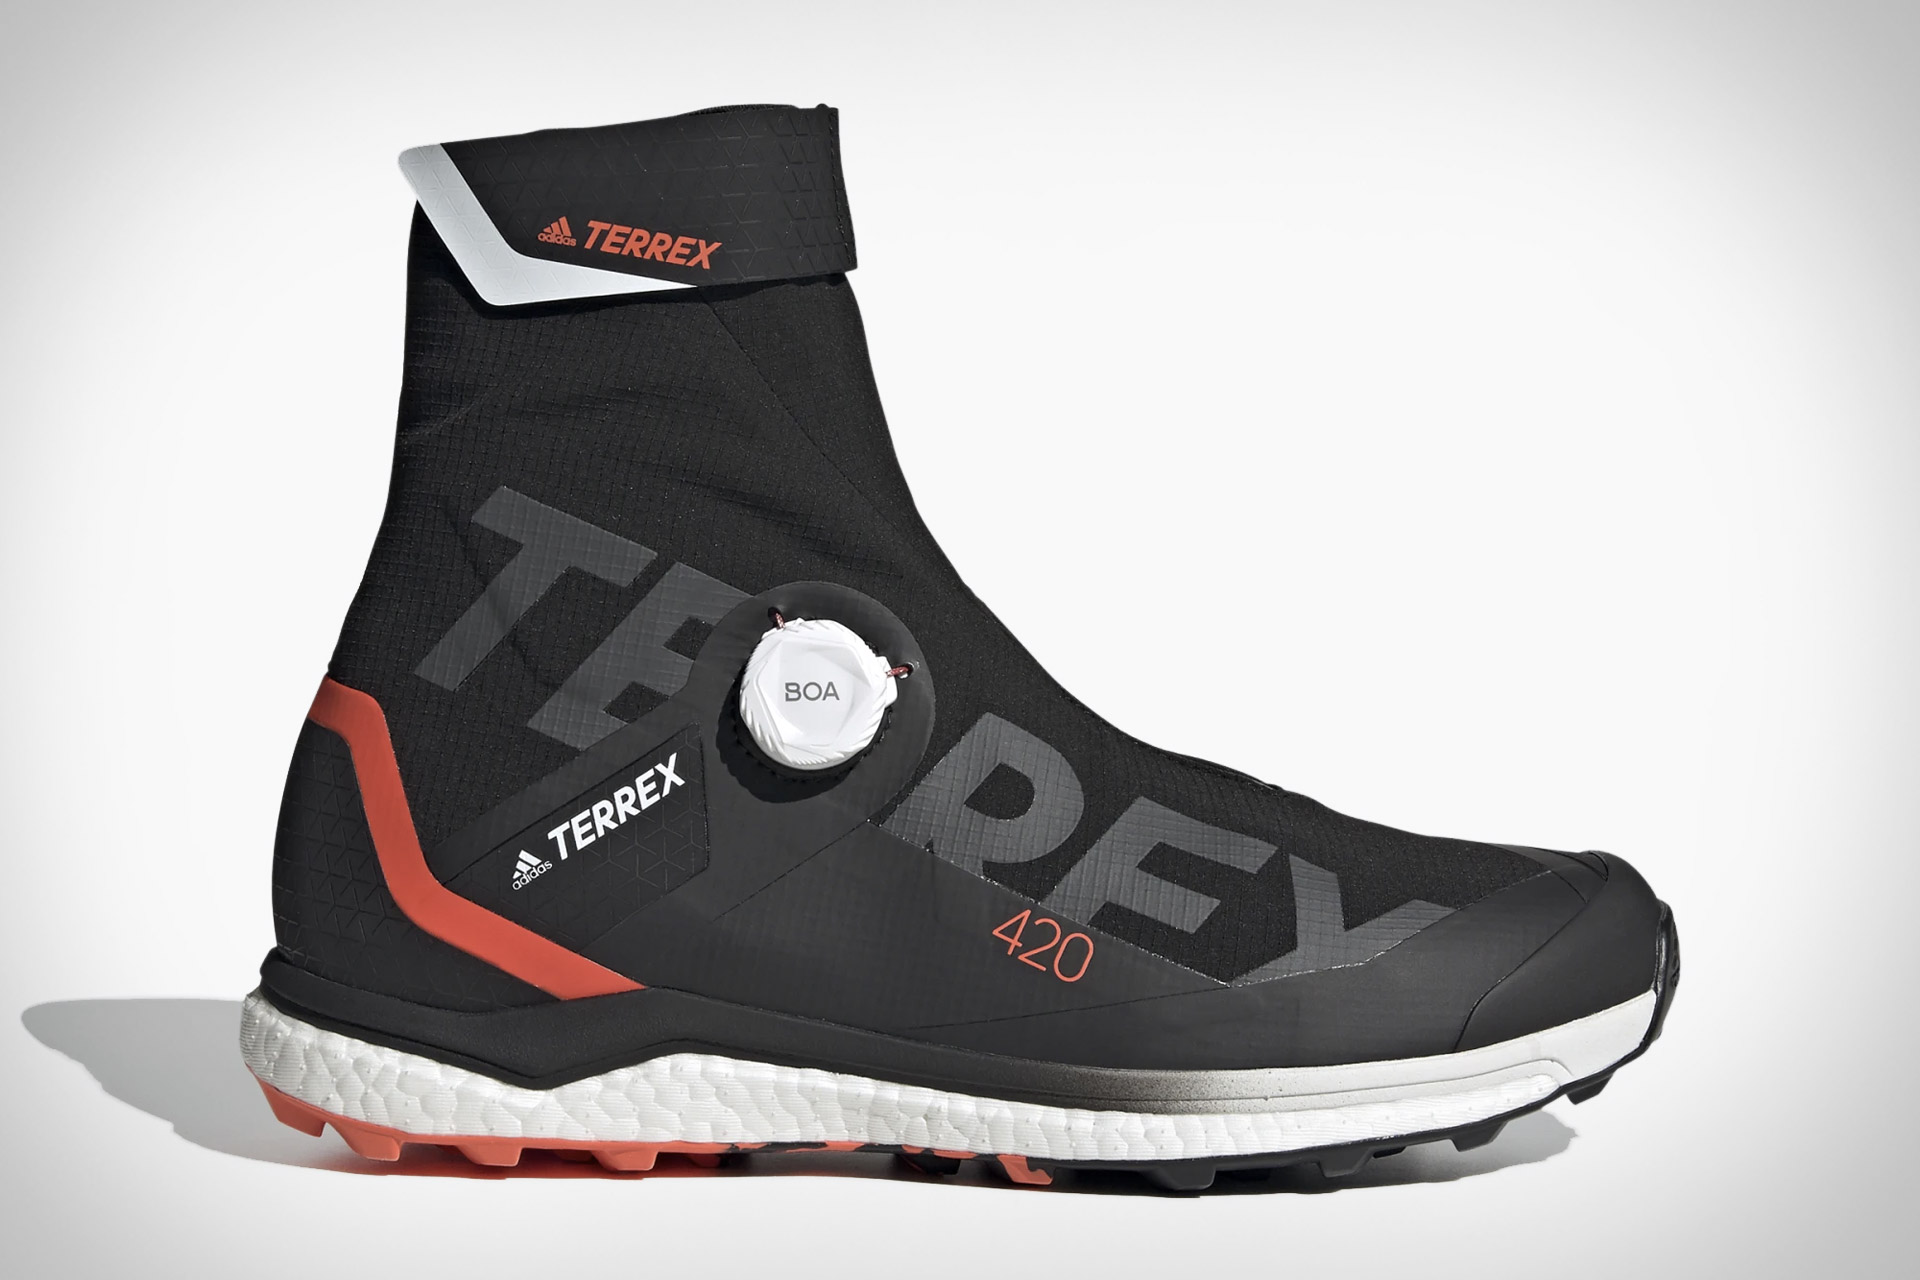 Adidas Terrex Agravic Pro Tech Shoes | Uncrate